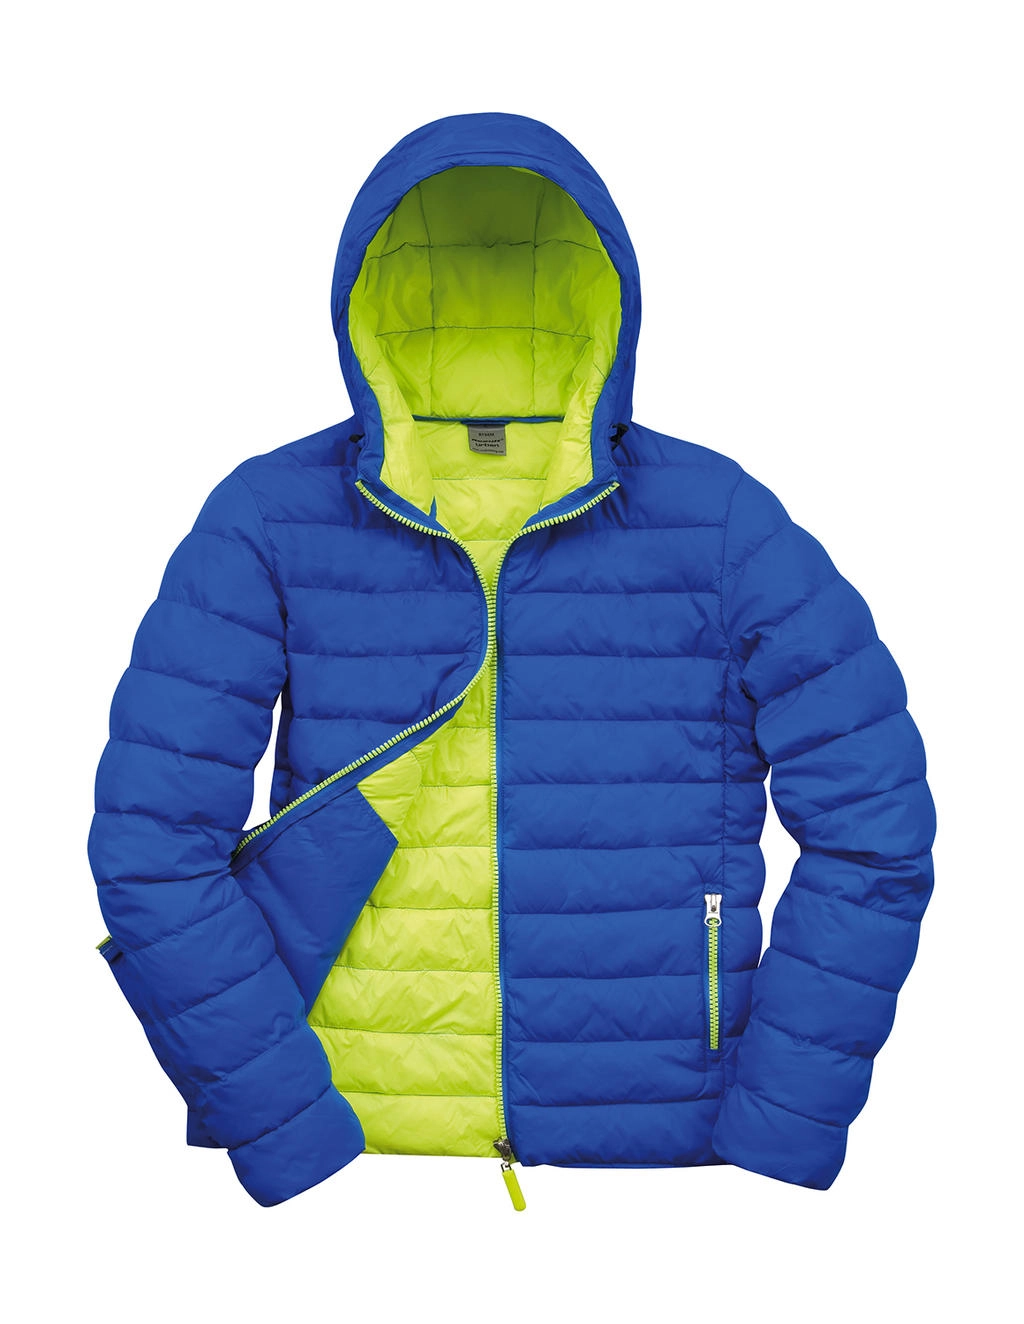 Snow Bird Hooded Jacket zum Besticken und Bedrucken in der Farbe Ocean Blue/Lime Punch mit Ihren Logo, Schriftzug oder Motiv.